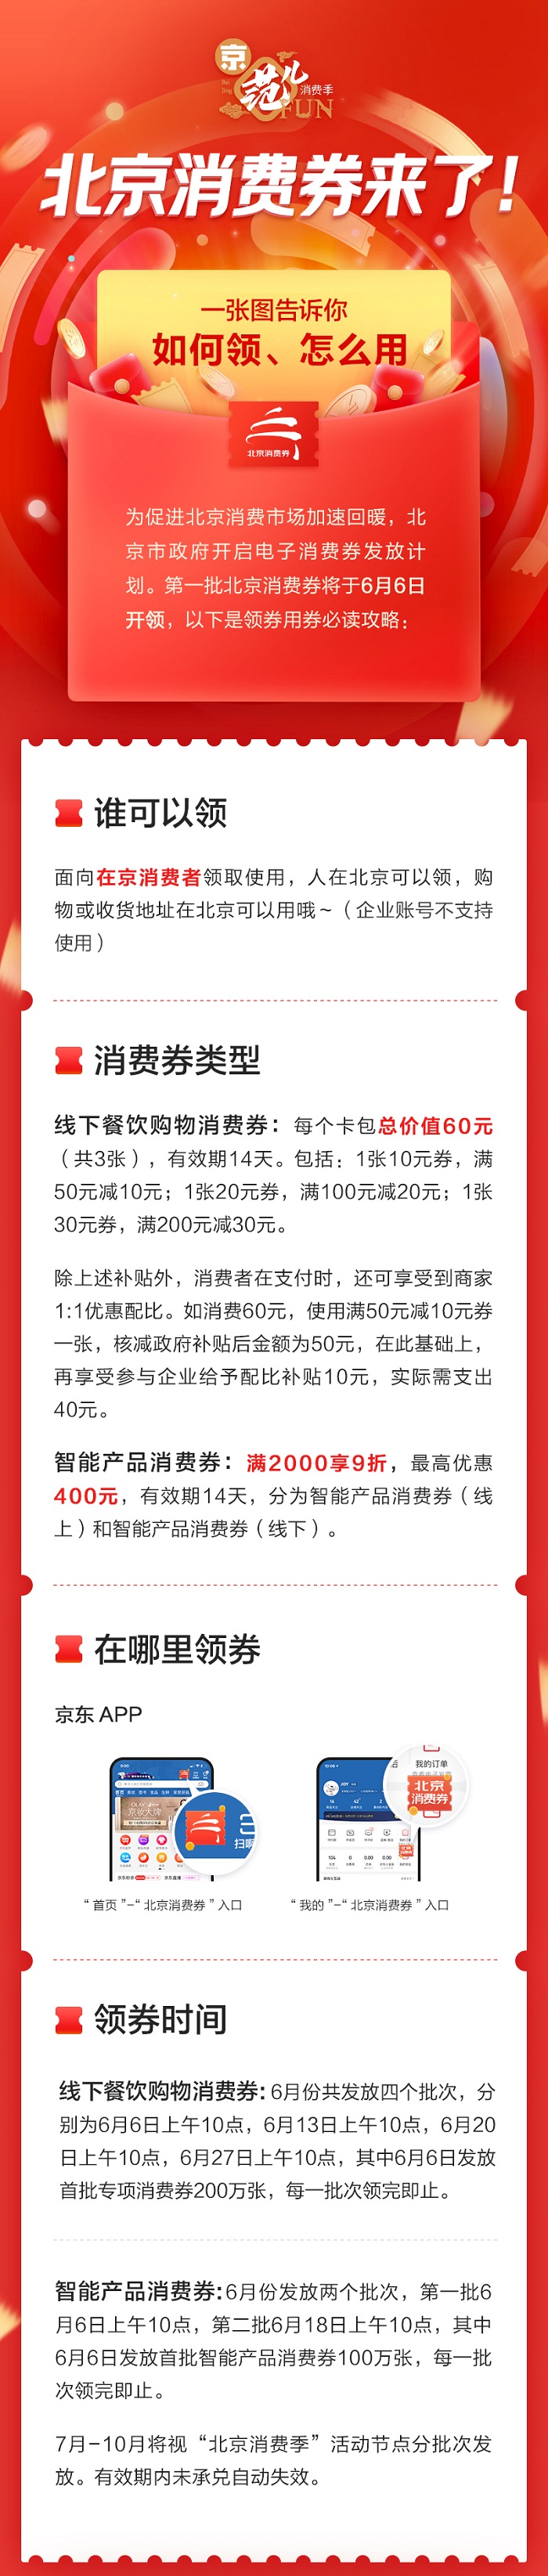 促消費助經濟 北京消費季6月6日啟動 122億元消費券將發放